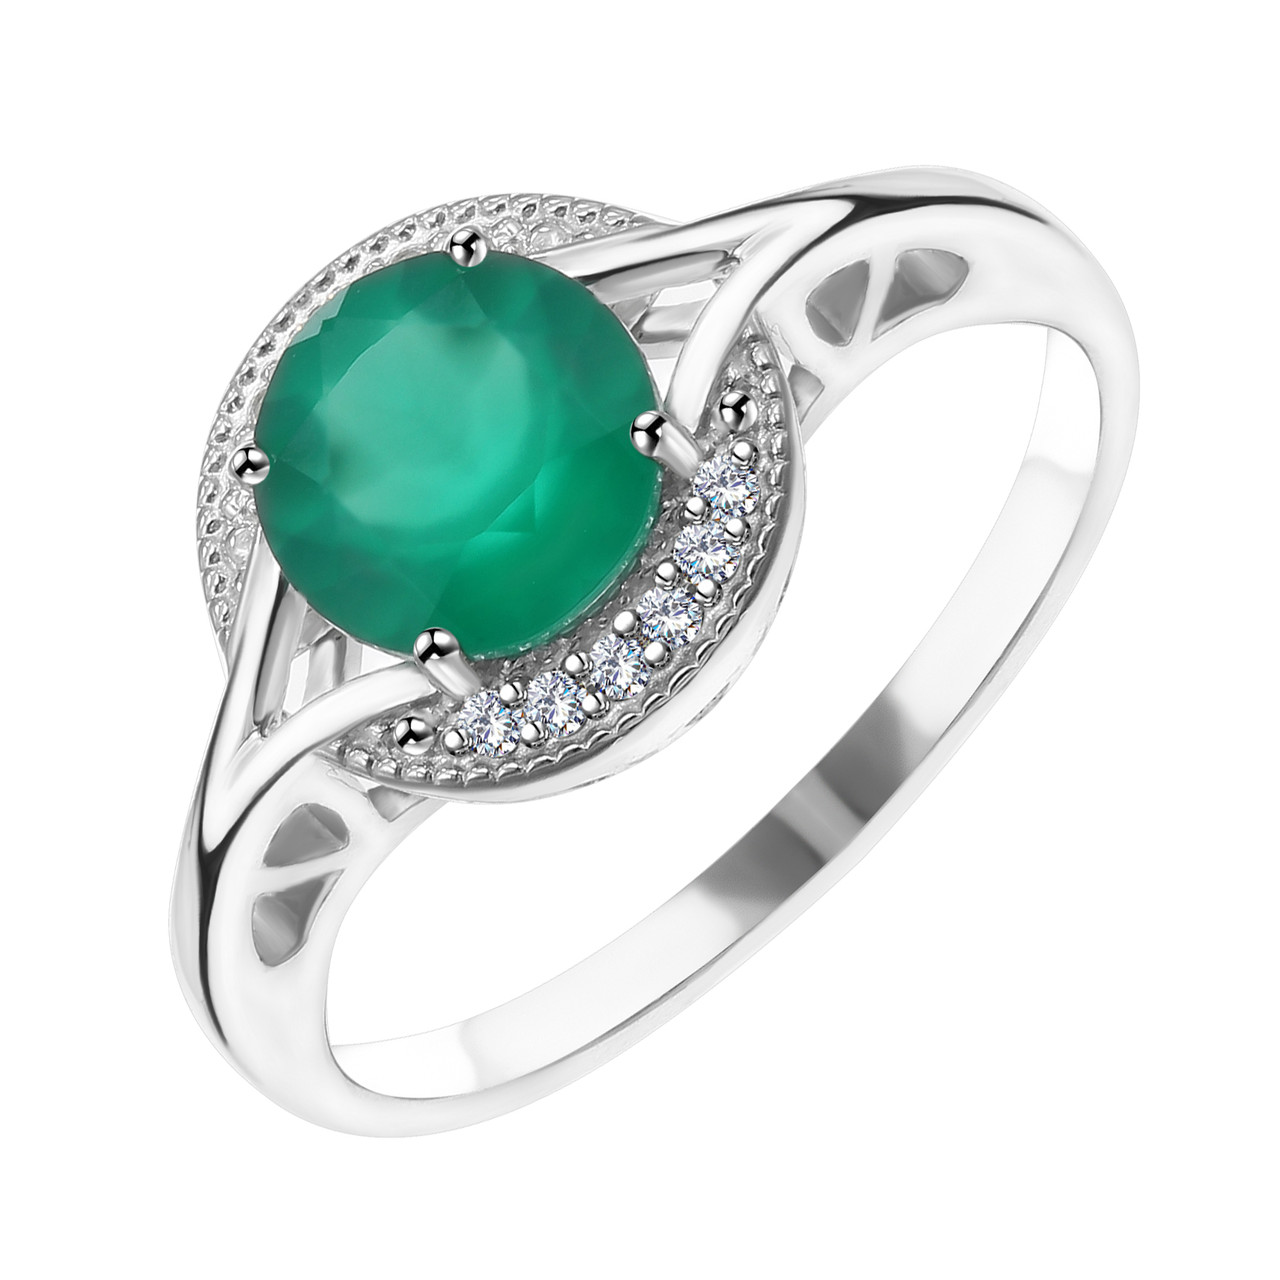 Кольцо из серебра с агатом зелёным и фианитом Efremov 1021010388-9 покрыто  родием